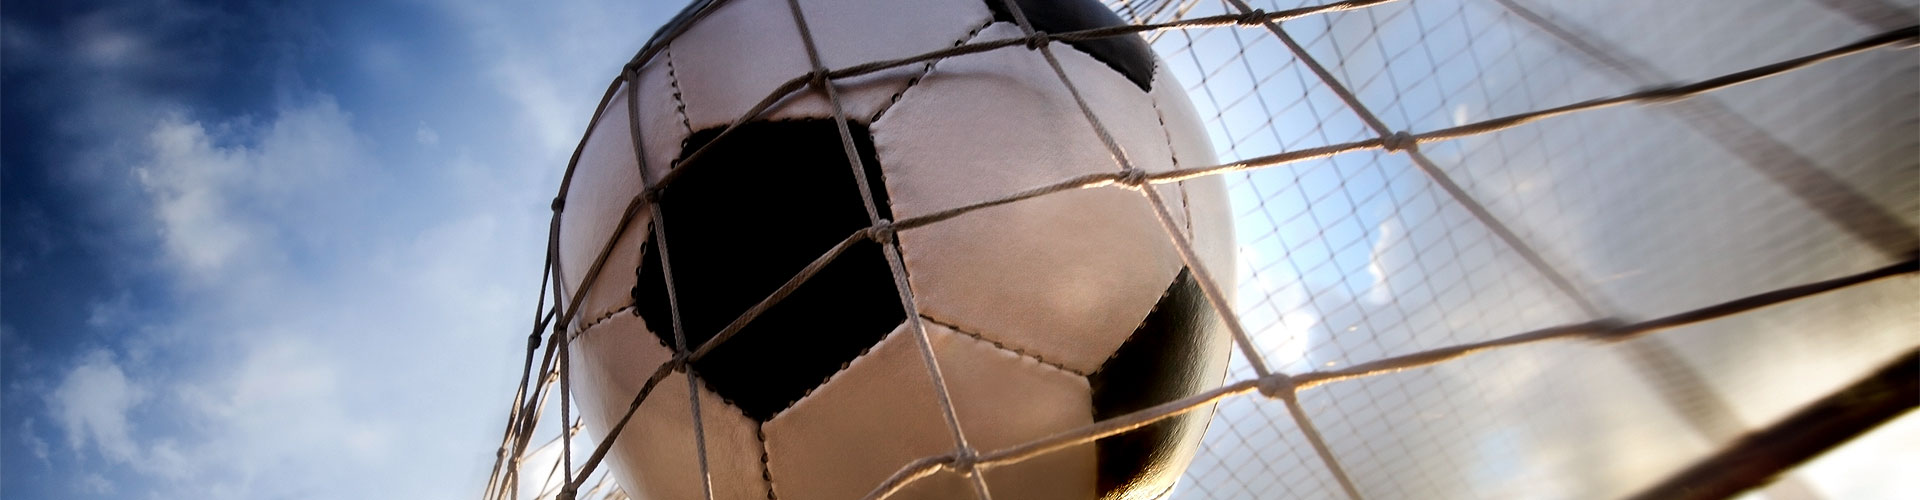 Ver la Eurocopa 2020 de fútbol en vivo en Poblenou
        
        


	    
           
           


          
          
          
